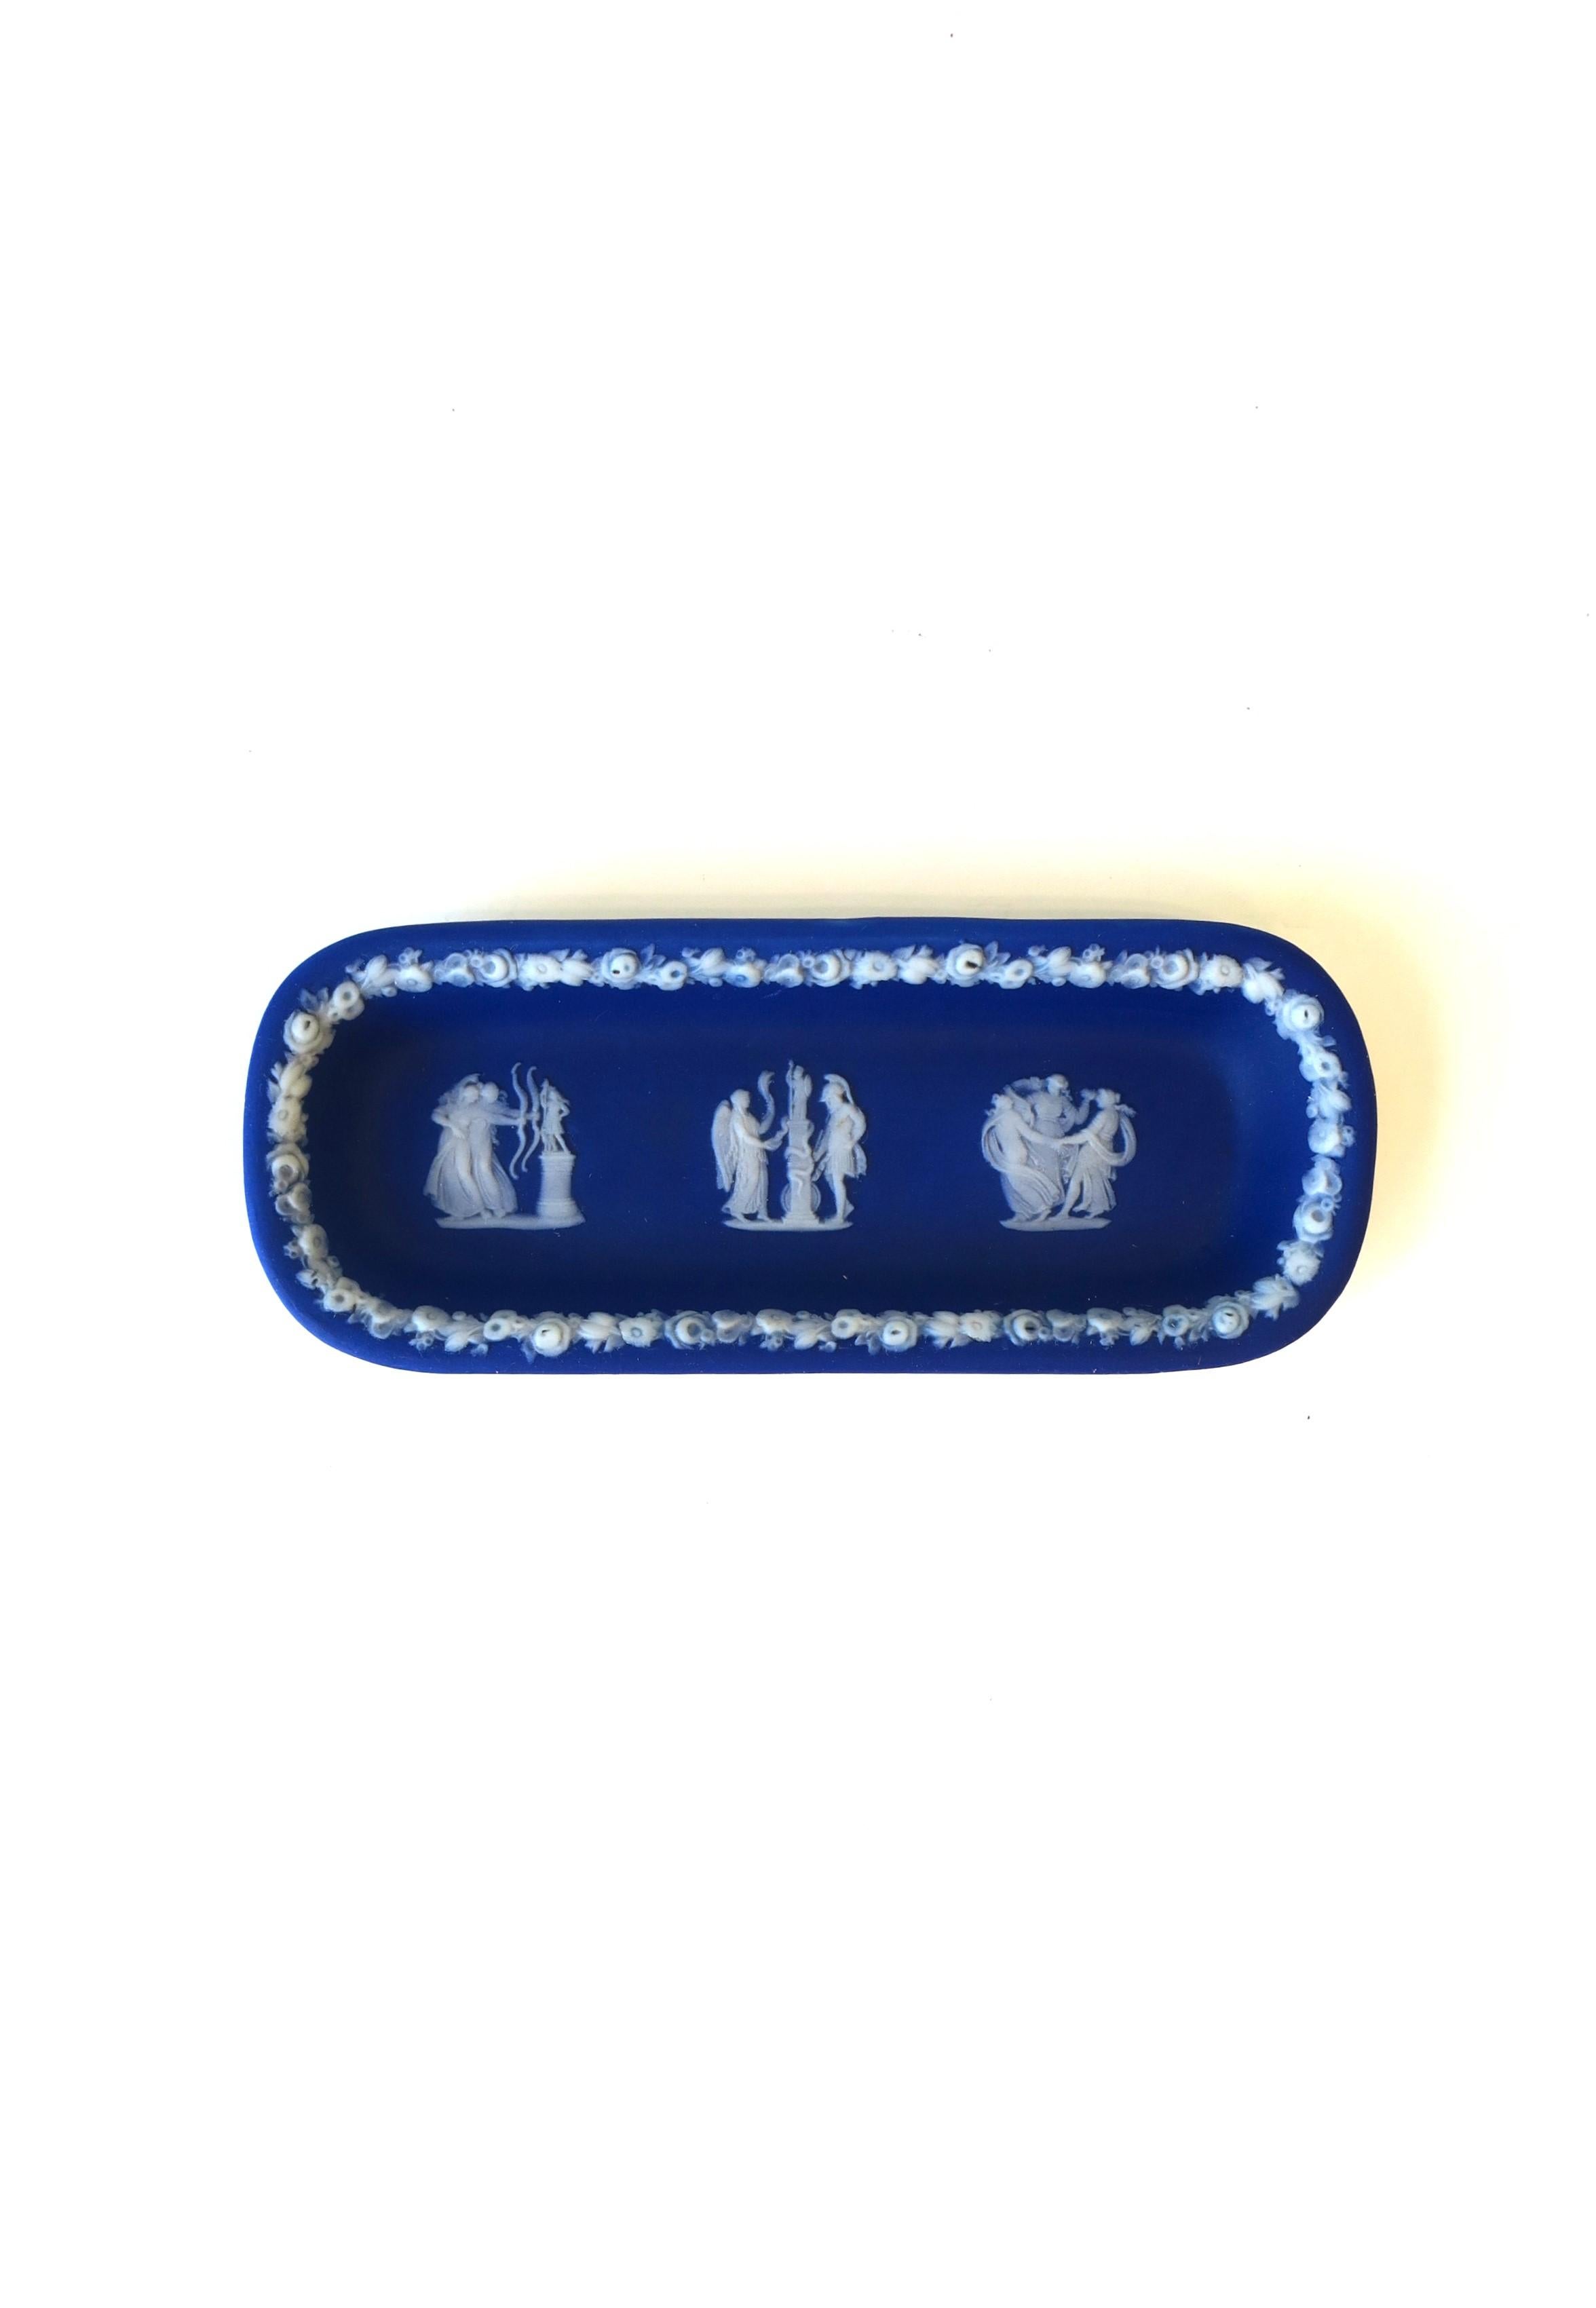 Antike Wedgwood Jasperware, blau-weiße, längliche Schmuckschale im neoklassischen Stil, ca. Ende des 19. Jahrhunderts, England. Das Stück hat eine leicht gefaltete Lippe mit erhabenen Details am Rand und drei erhabenen figuralen Reliefszenen am